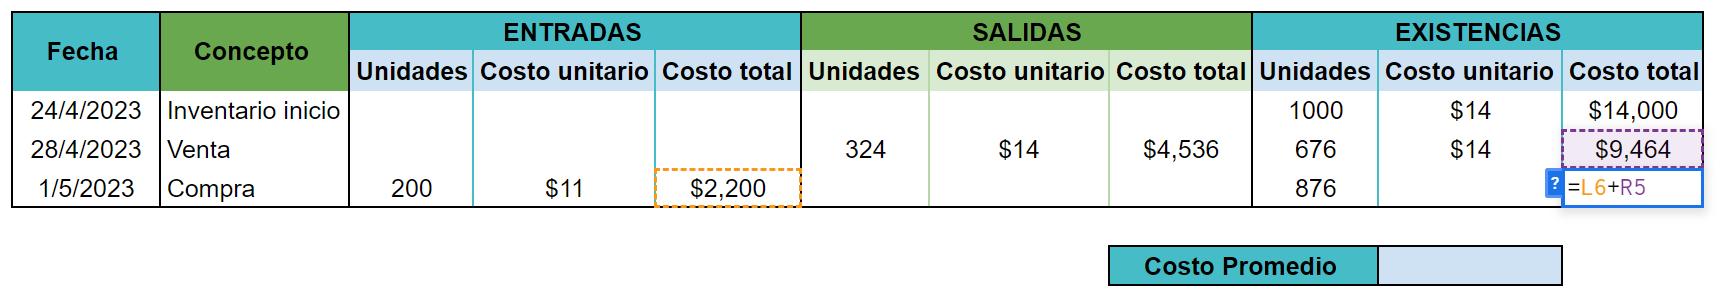 ejemplos de cómo calcular el costo promedio en inventario inicial